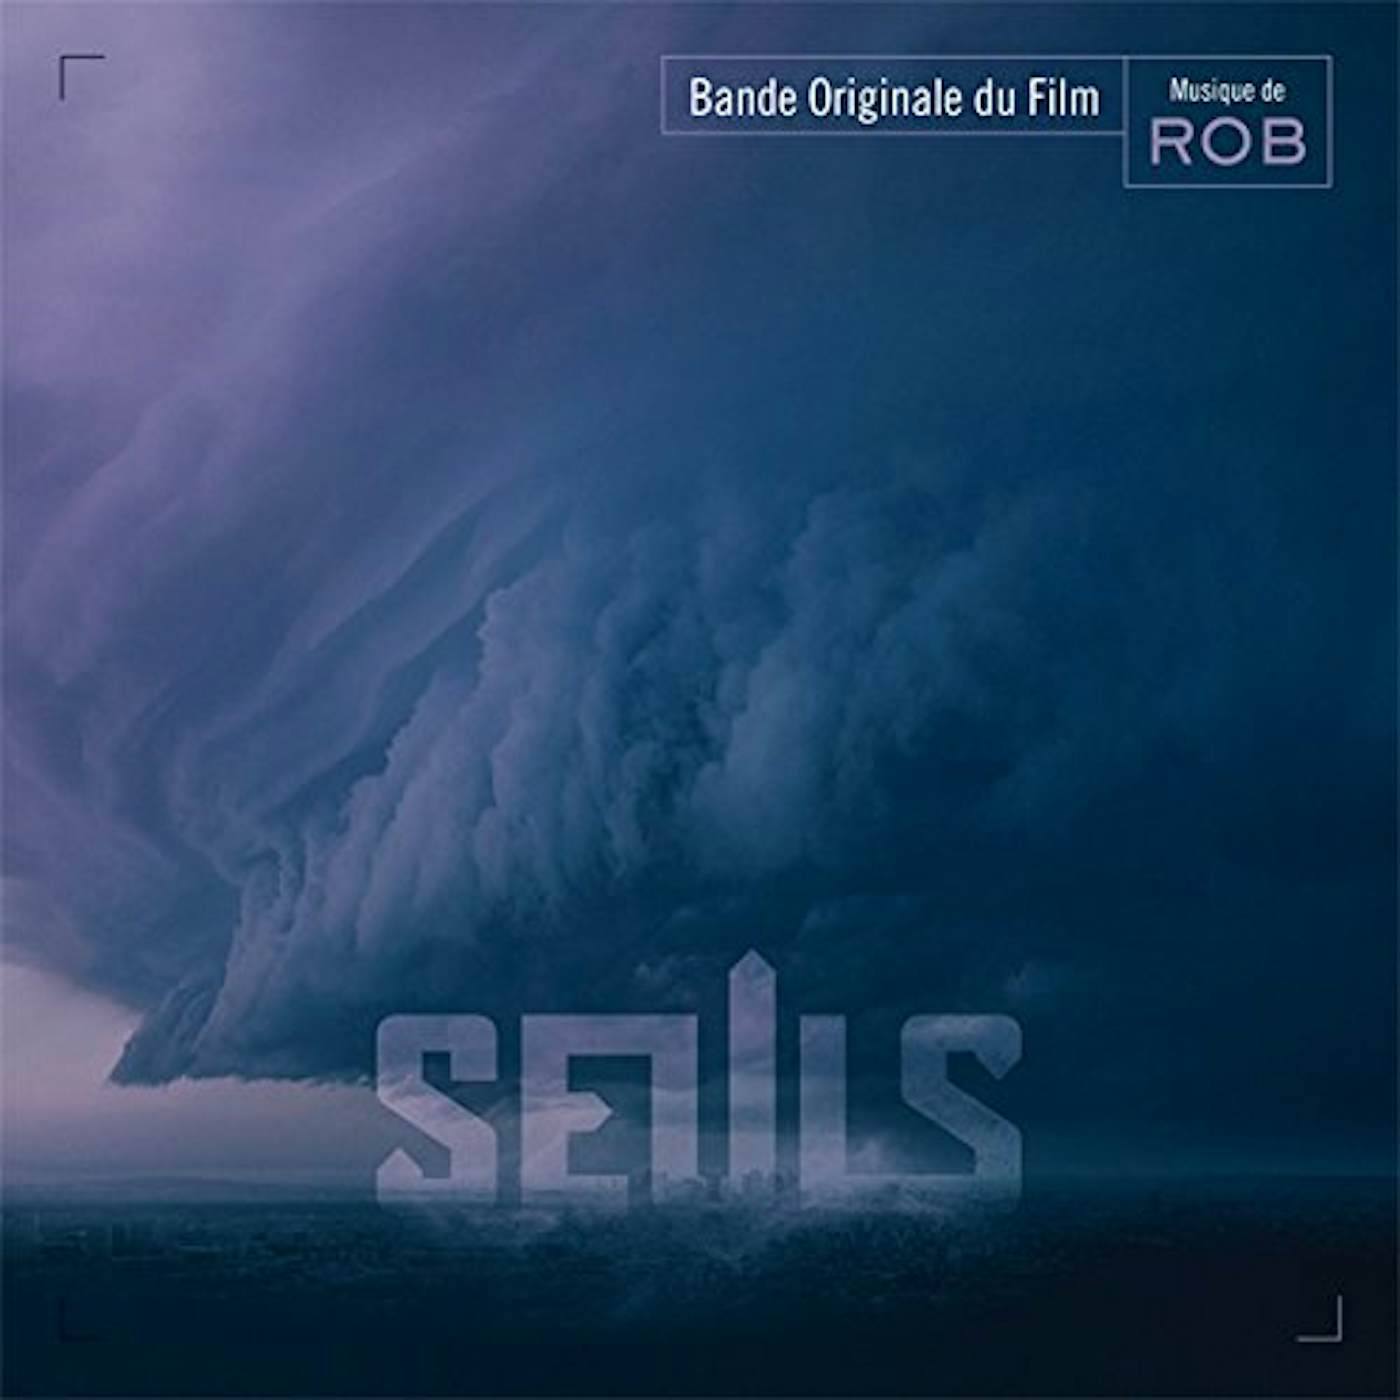 Rob SEULS (ALONE) / Original Soundtrack CD